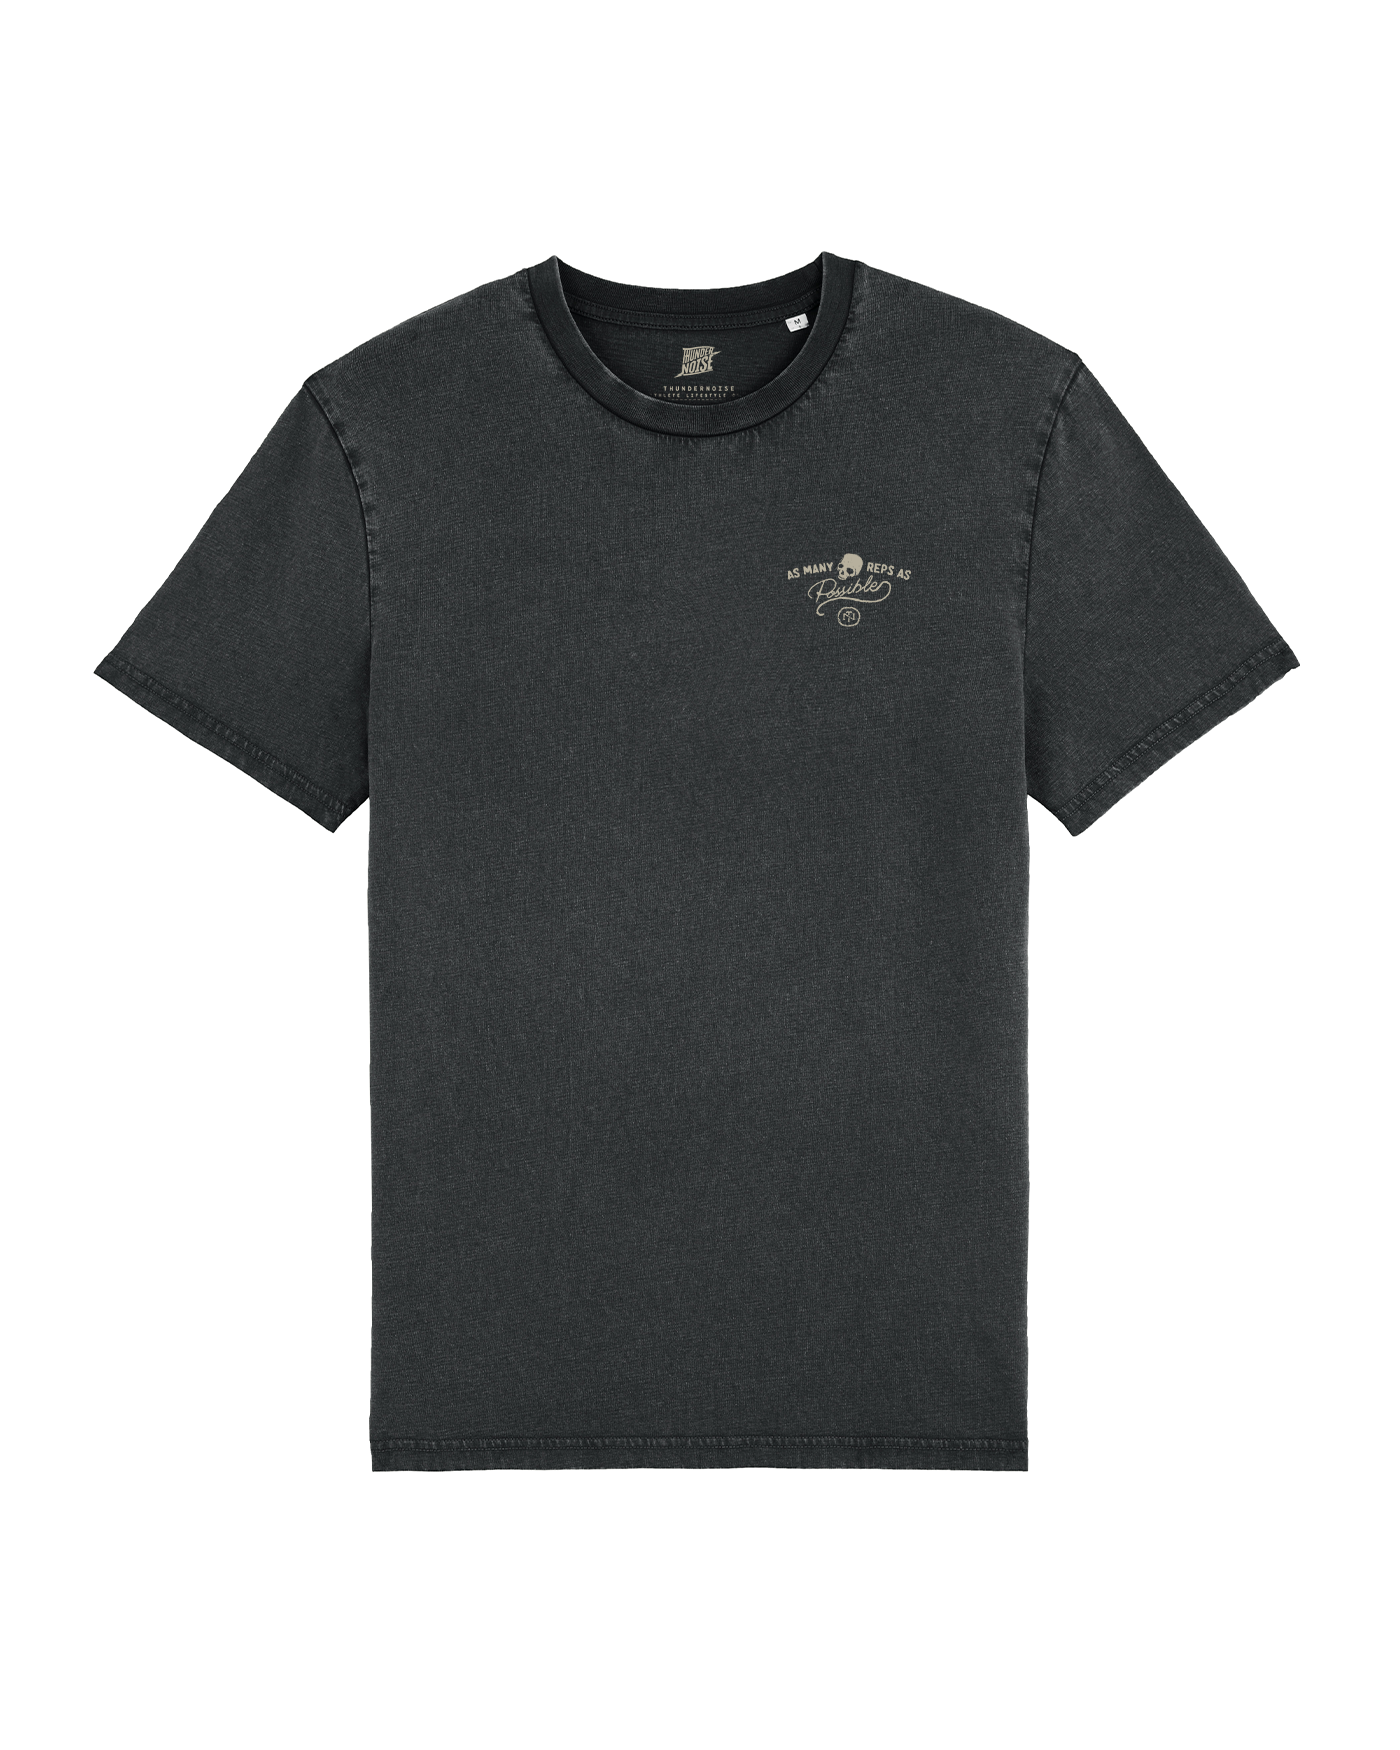 AMRAP T-Shirt - Washed Black